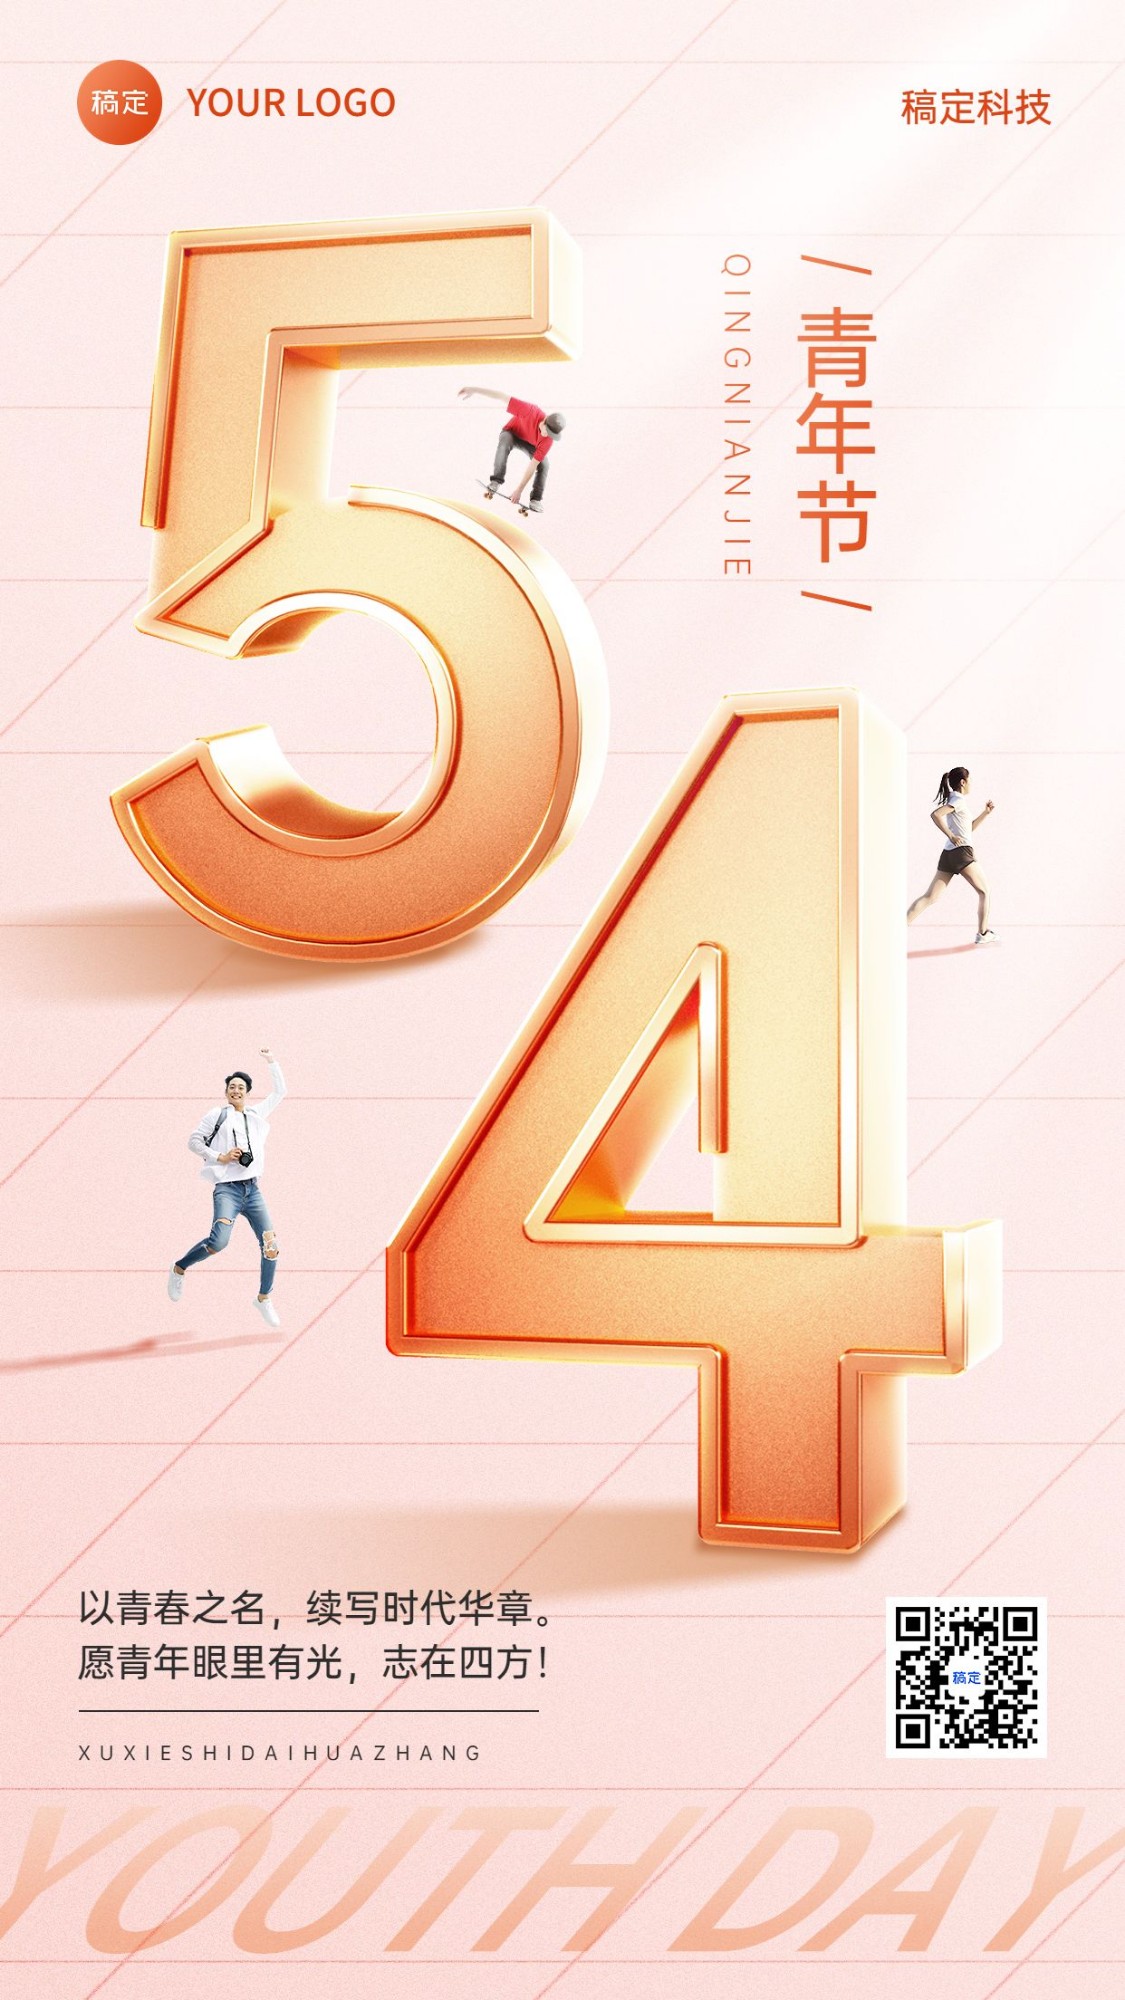 企业54青年节节日祝福创意微缩合成手机海报